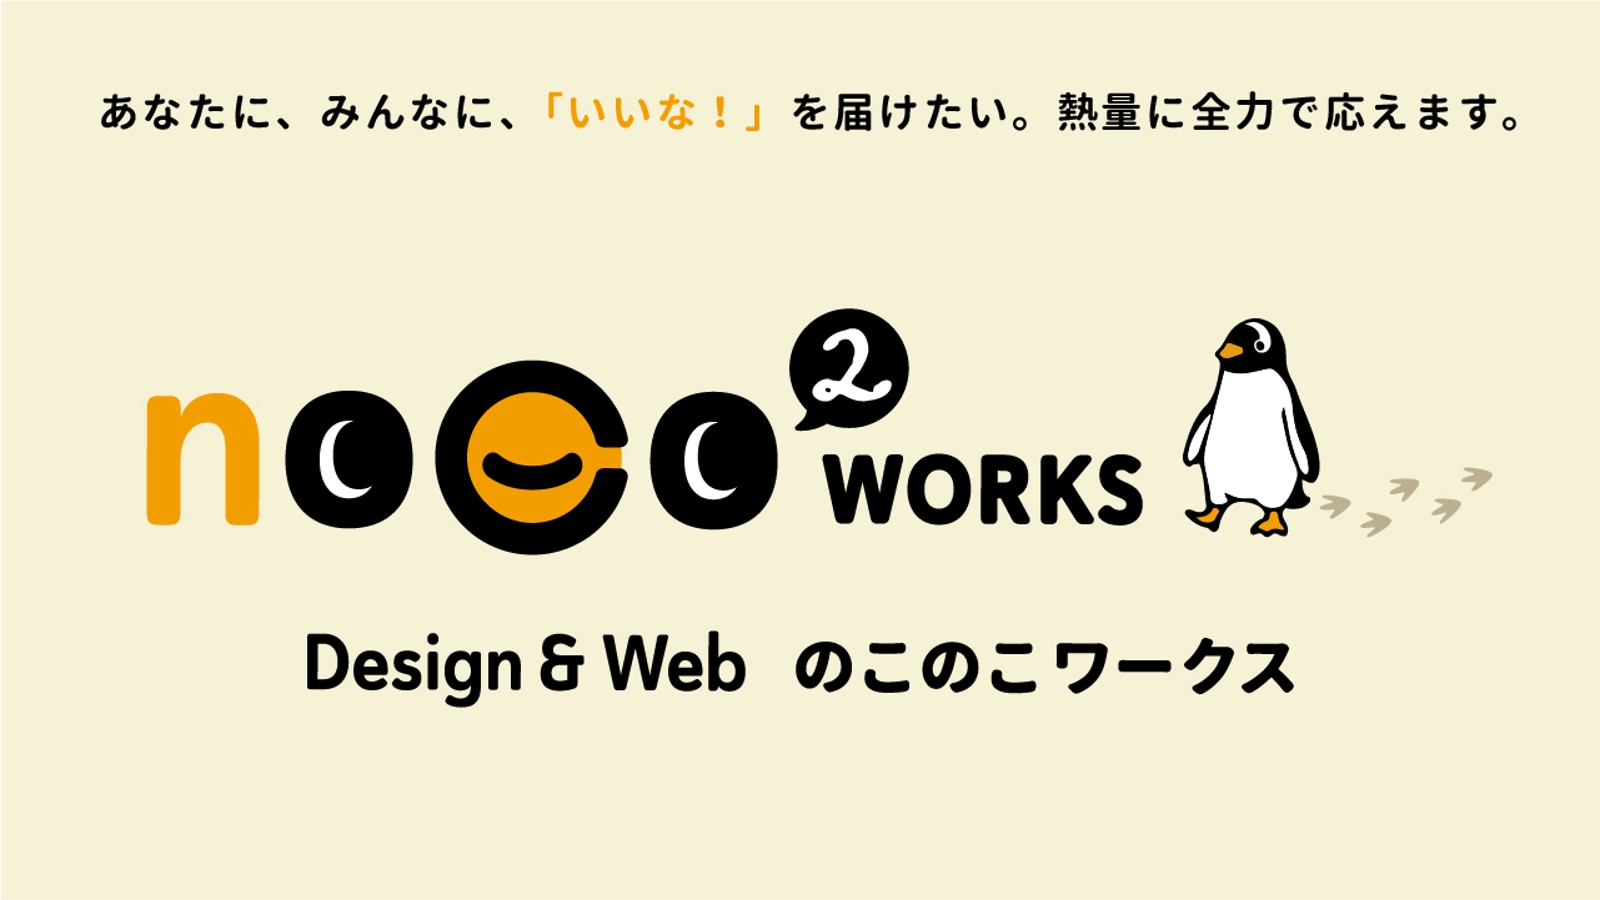 作りたいもの、やりたいことがある方へ【ロゴ・イラスト・印刷物・WordPress・Webデザイン】-image1